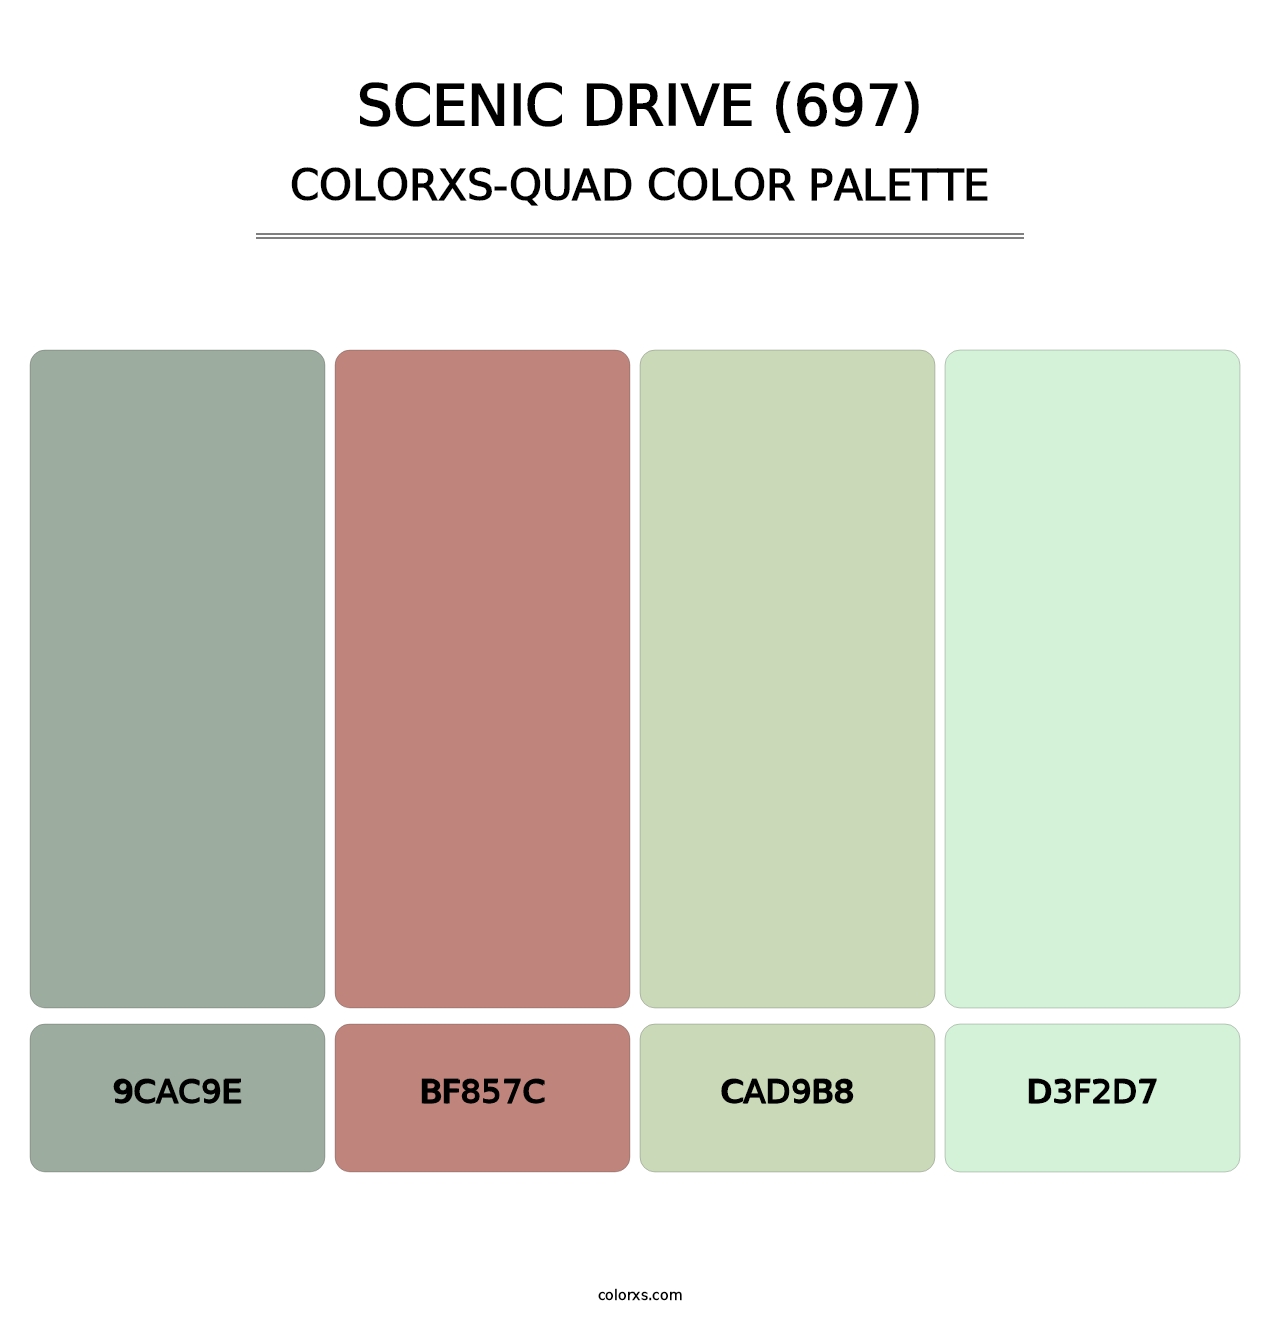 Scenic Drive (697) - Colorxs Quad Palette